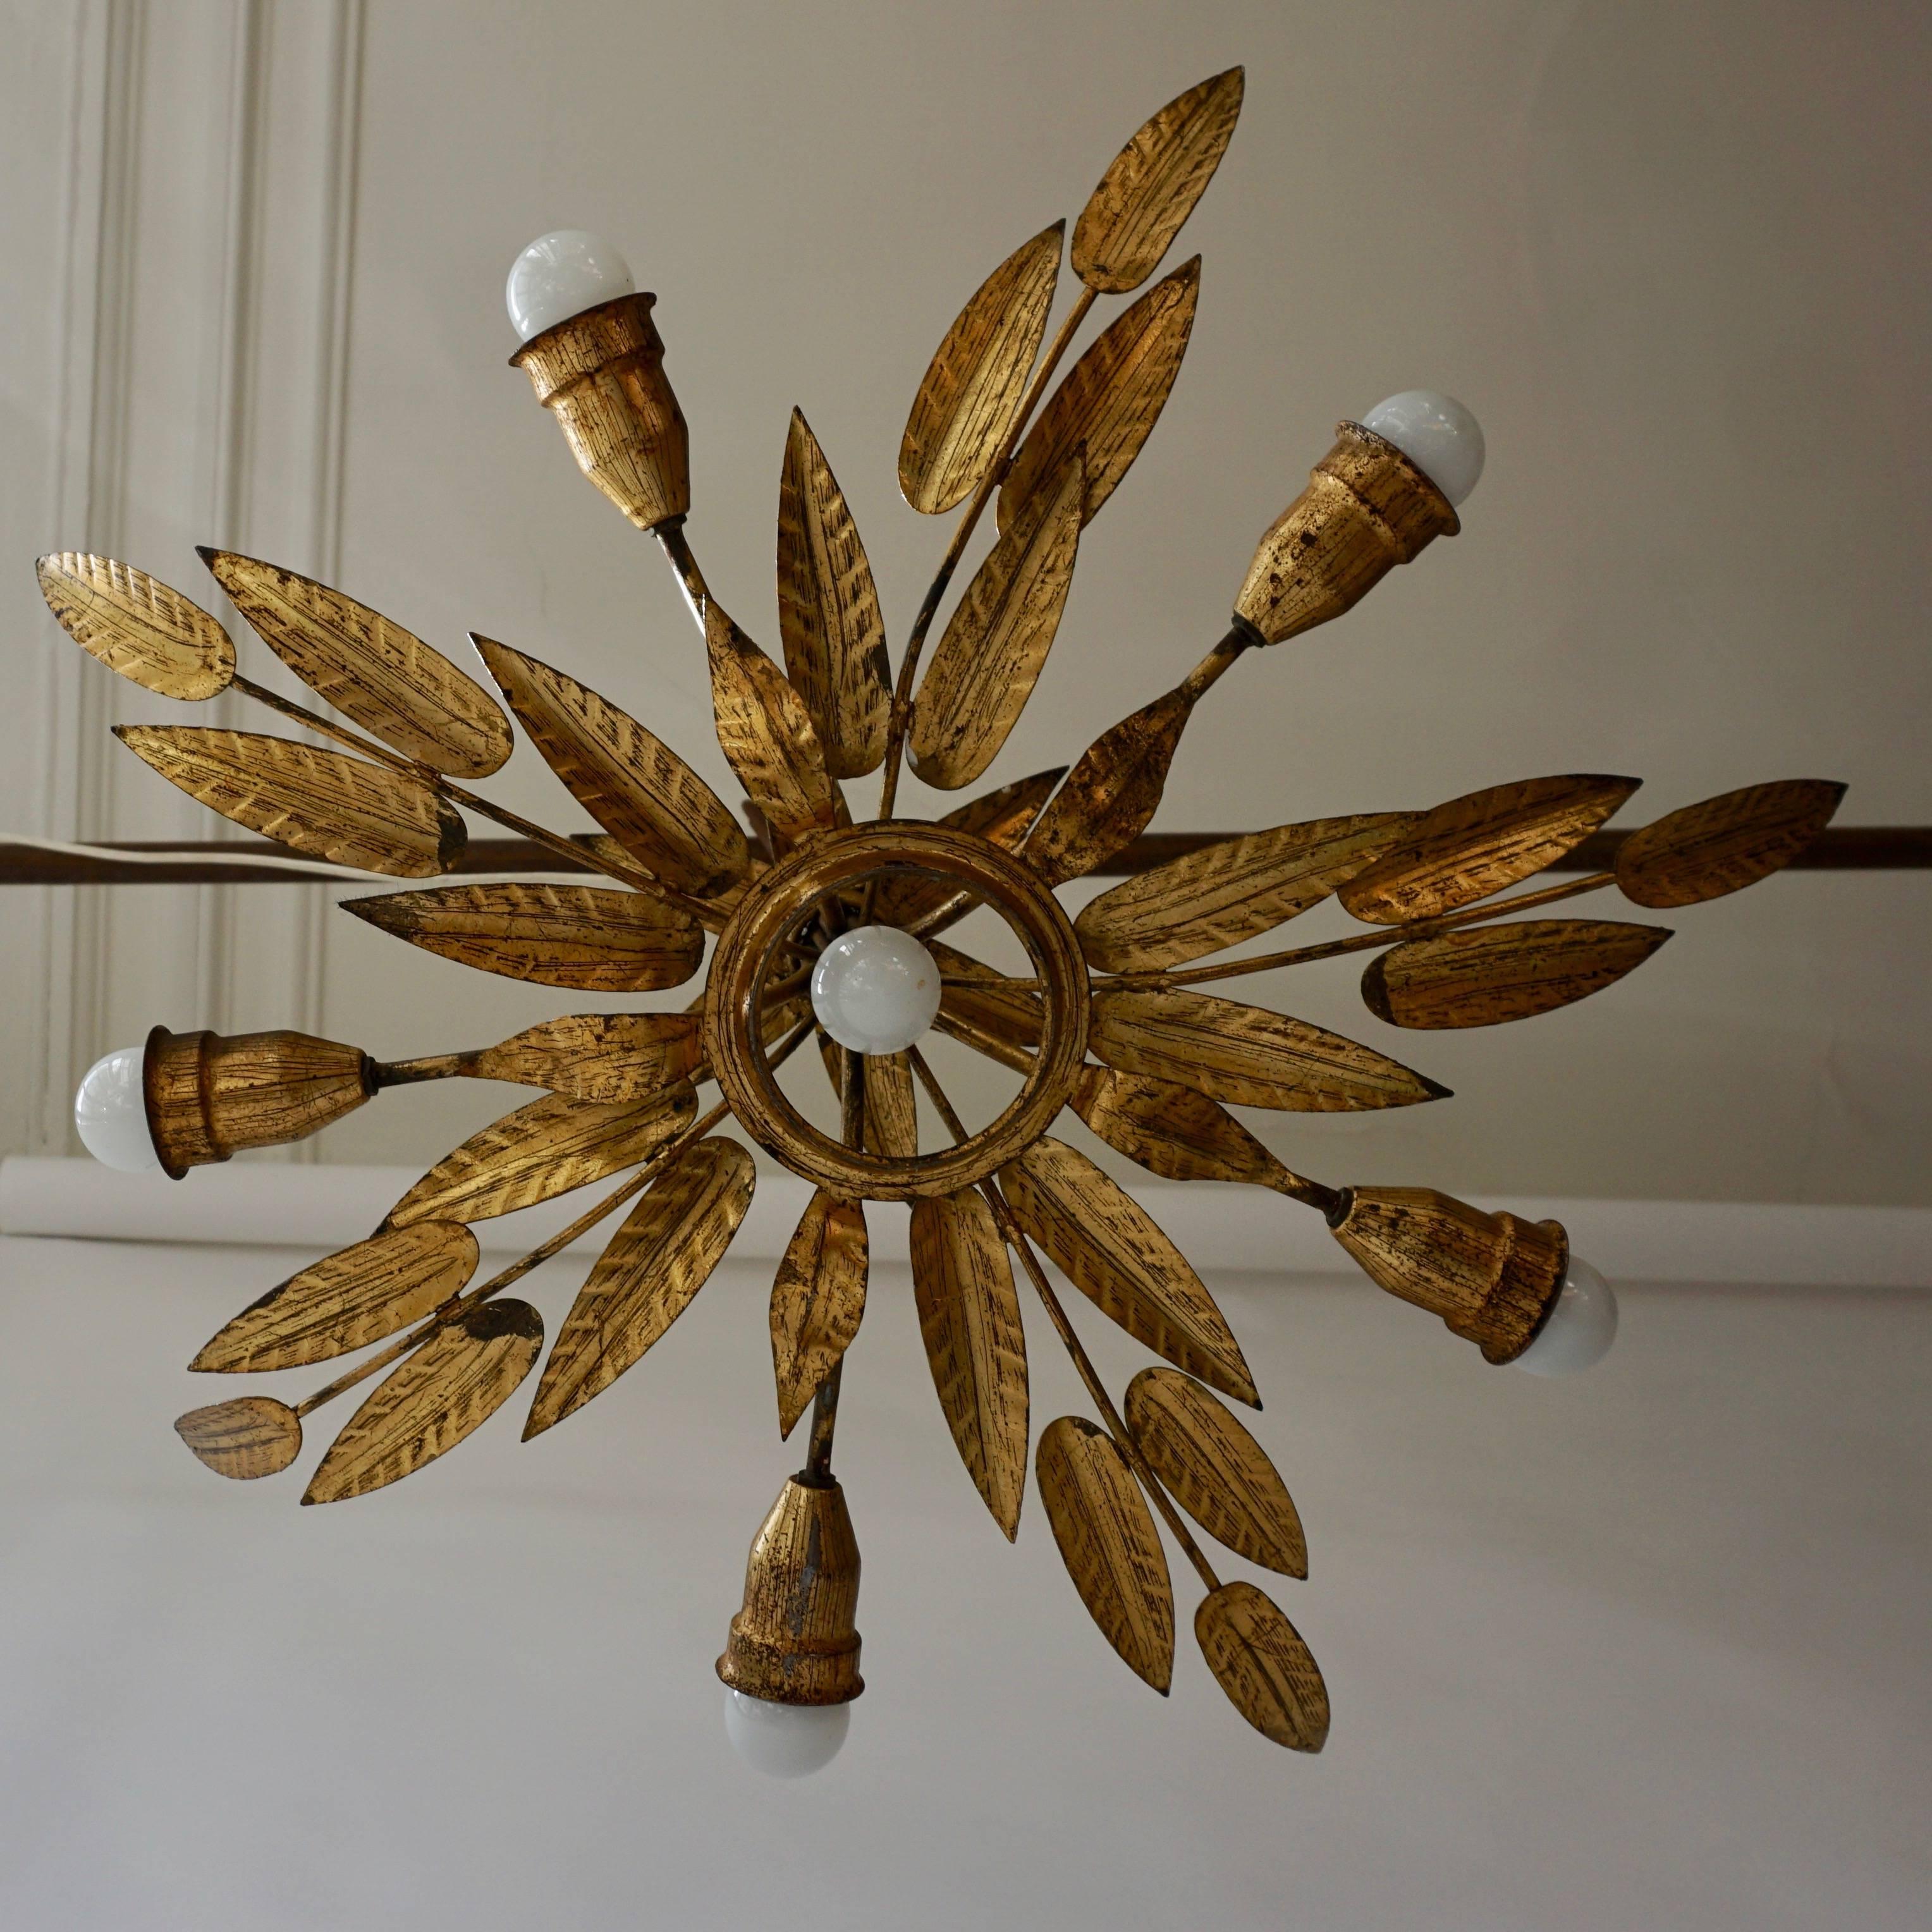 Hollywood Regency gilded brass starburst flush mount chandelier.
Measure: Diameter 70 cm.
Height 25 cm.
Six E27 bulbs.